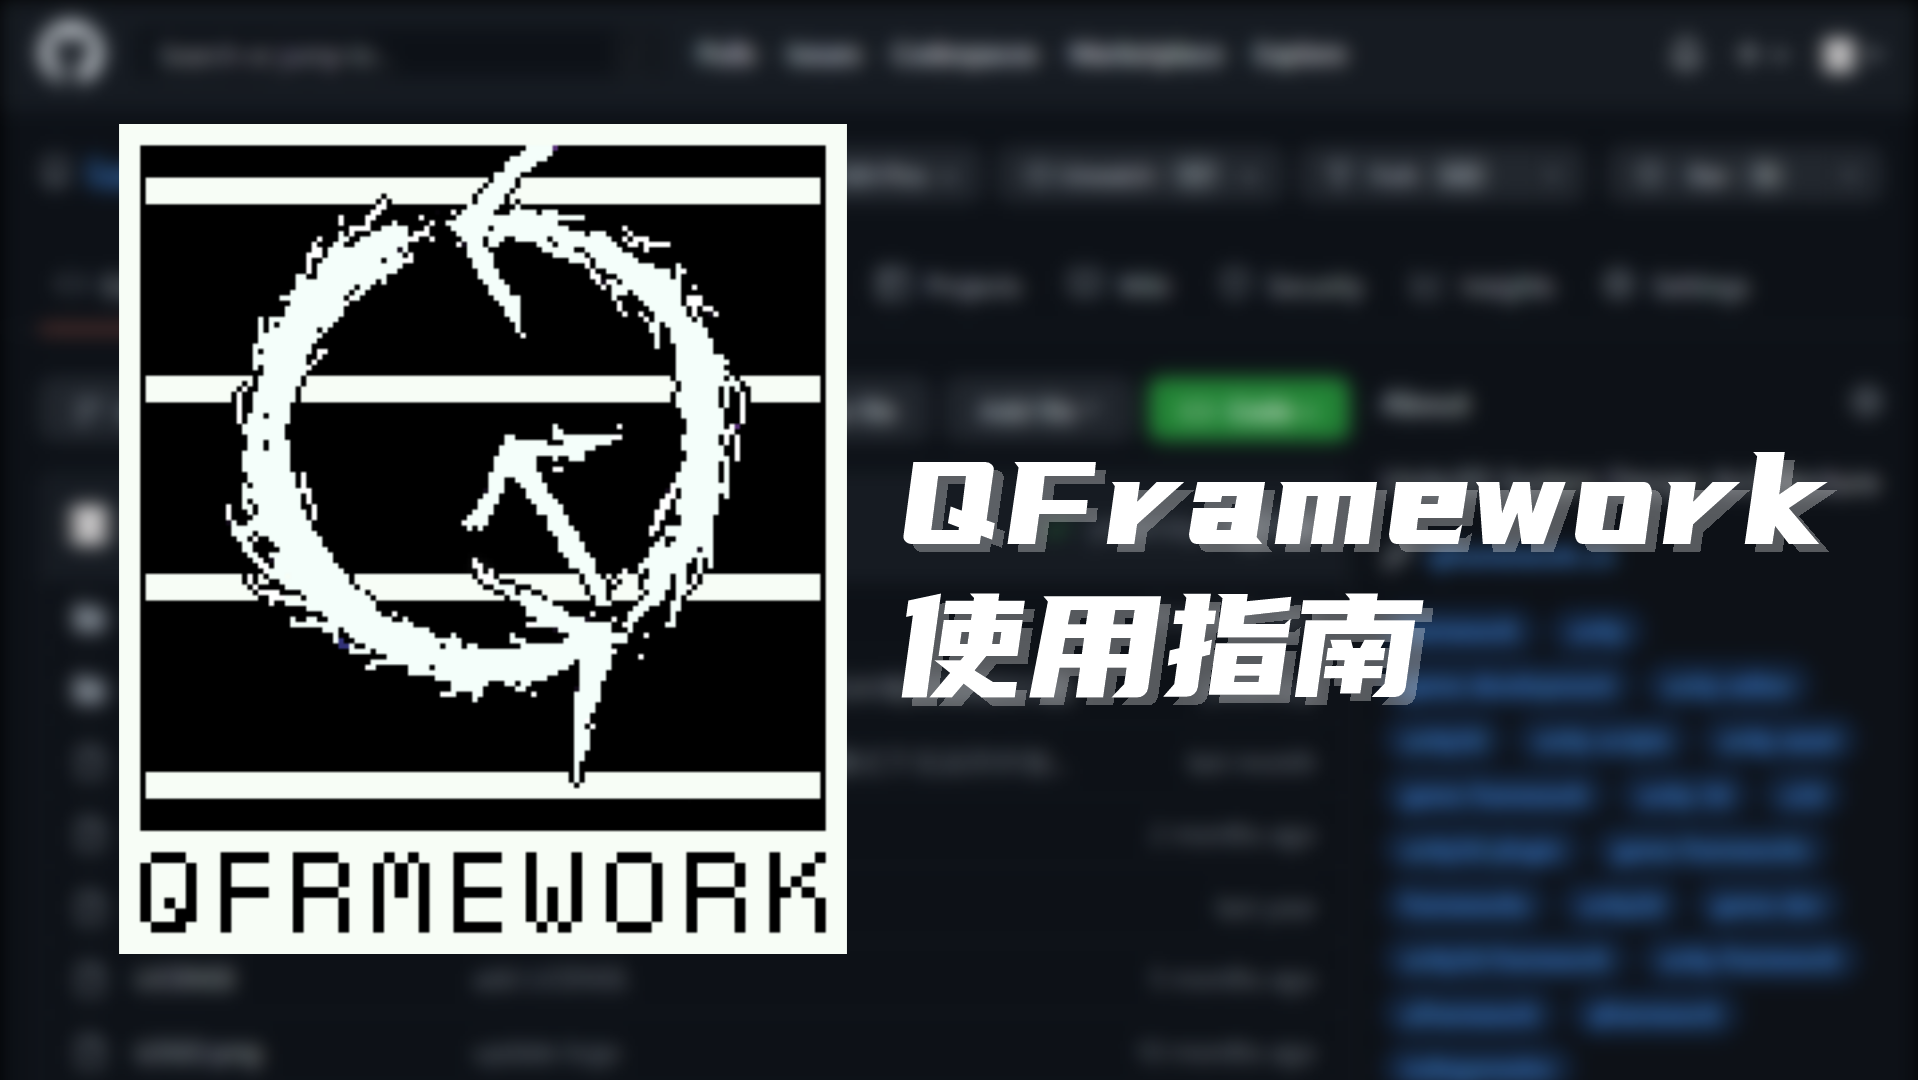 【Unity 框架】QFramework v1.0 使用指南 工具篇：11. PoolKit 对象池套件 | Unity 游戏框架 | Unity 游戏开发 | Unity 独立游戏 